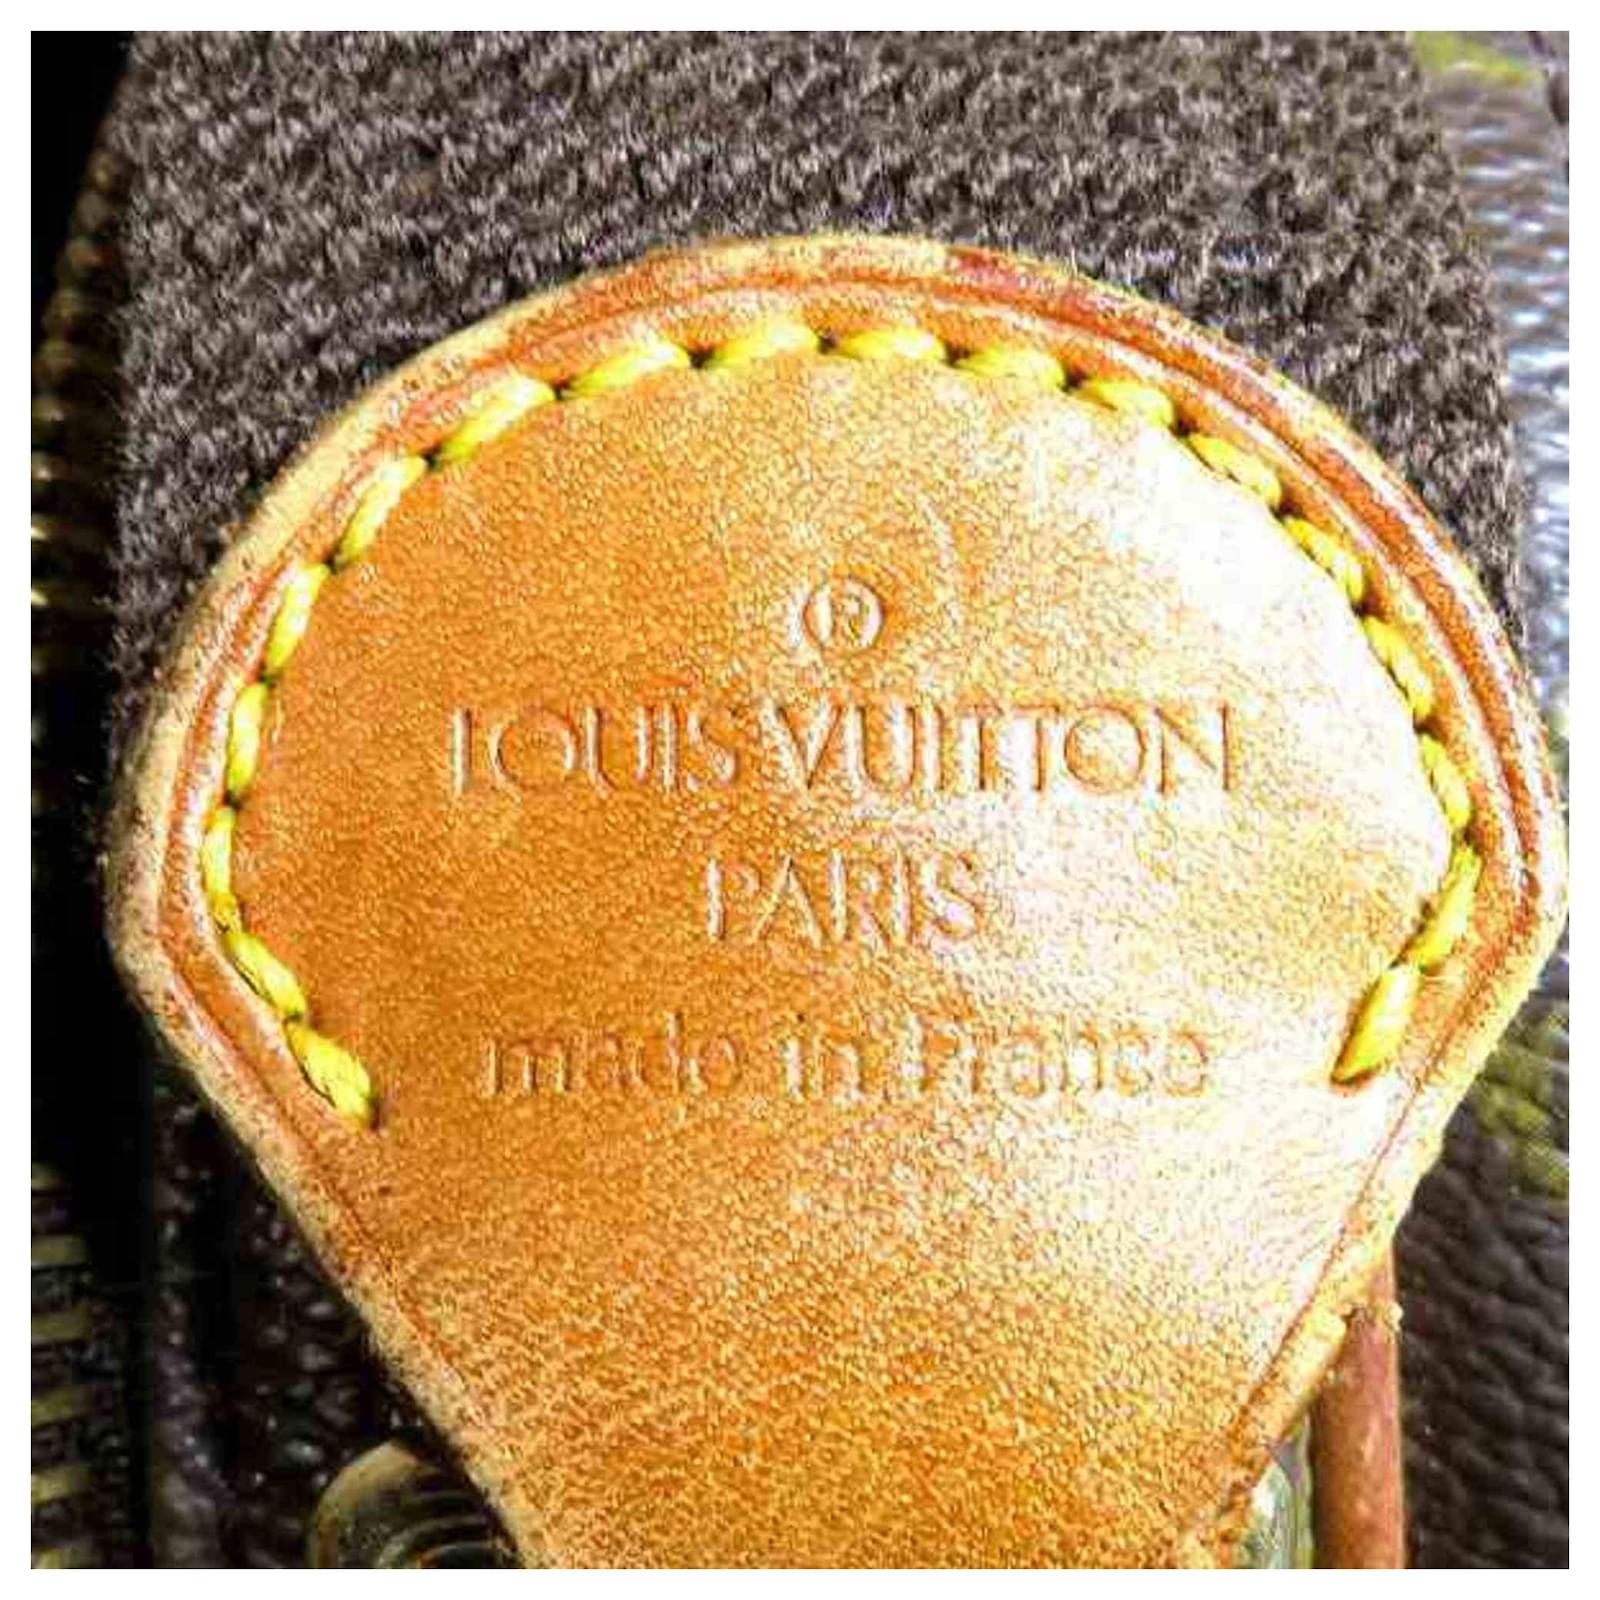 Garment cloth 24h bag Louis Vuitton Brown in Cloth - 12113929